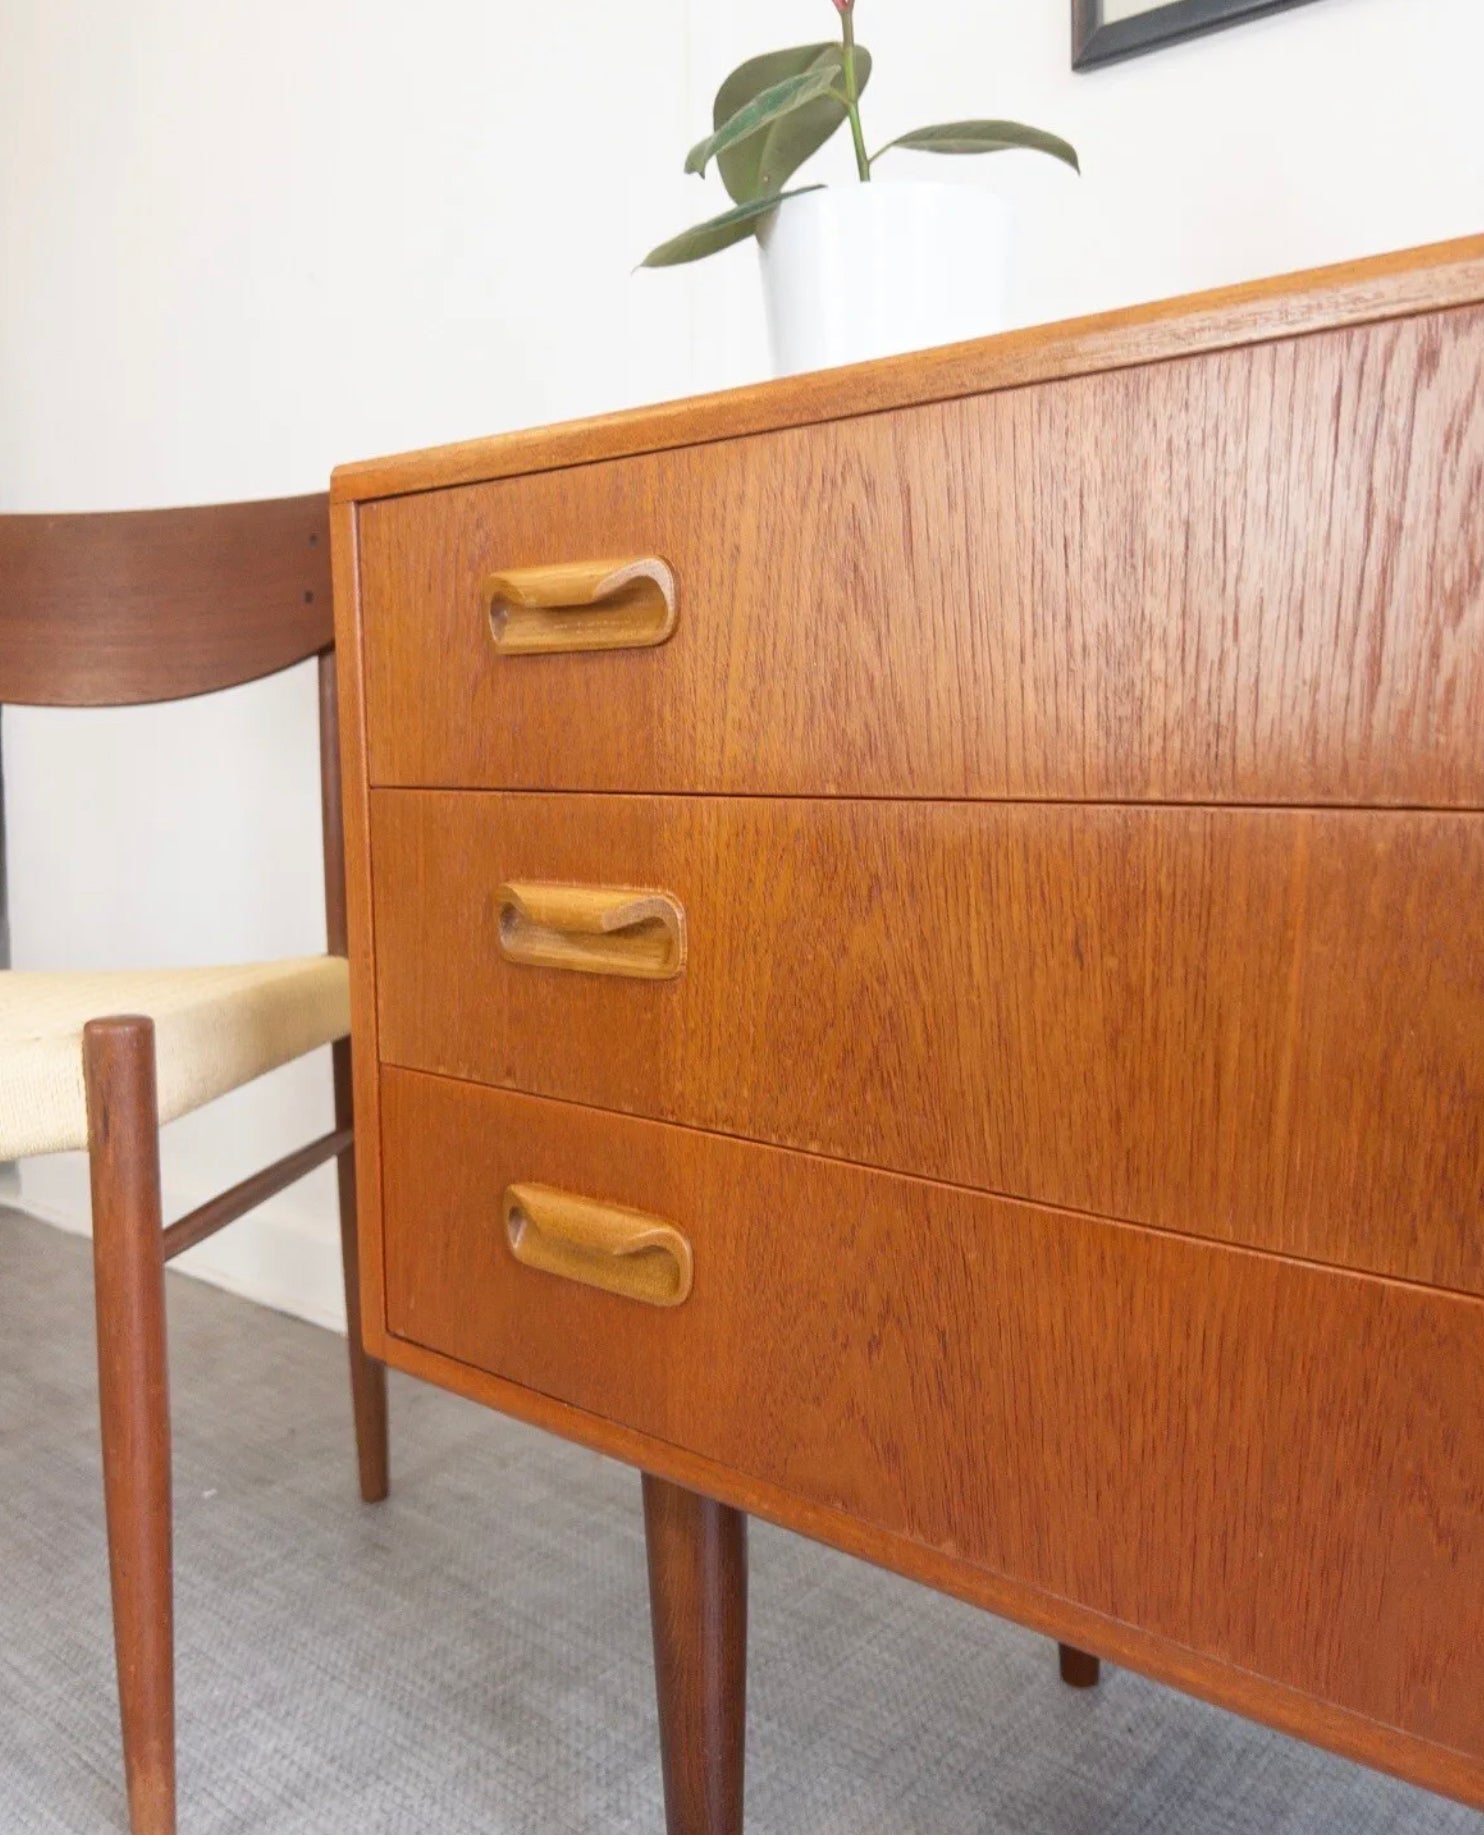 G Plan Teak Chest of Drawers on Wooden Legs Vintage Mid Century Furniture - teakyfinders